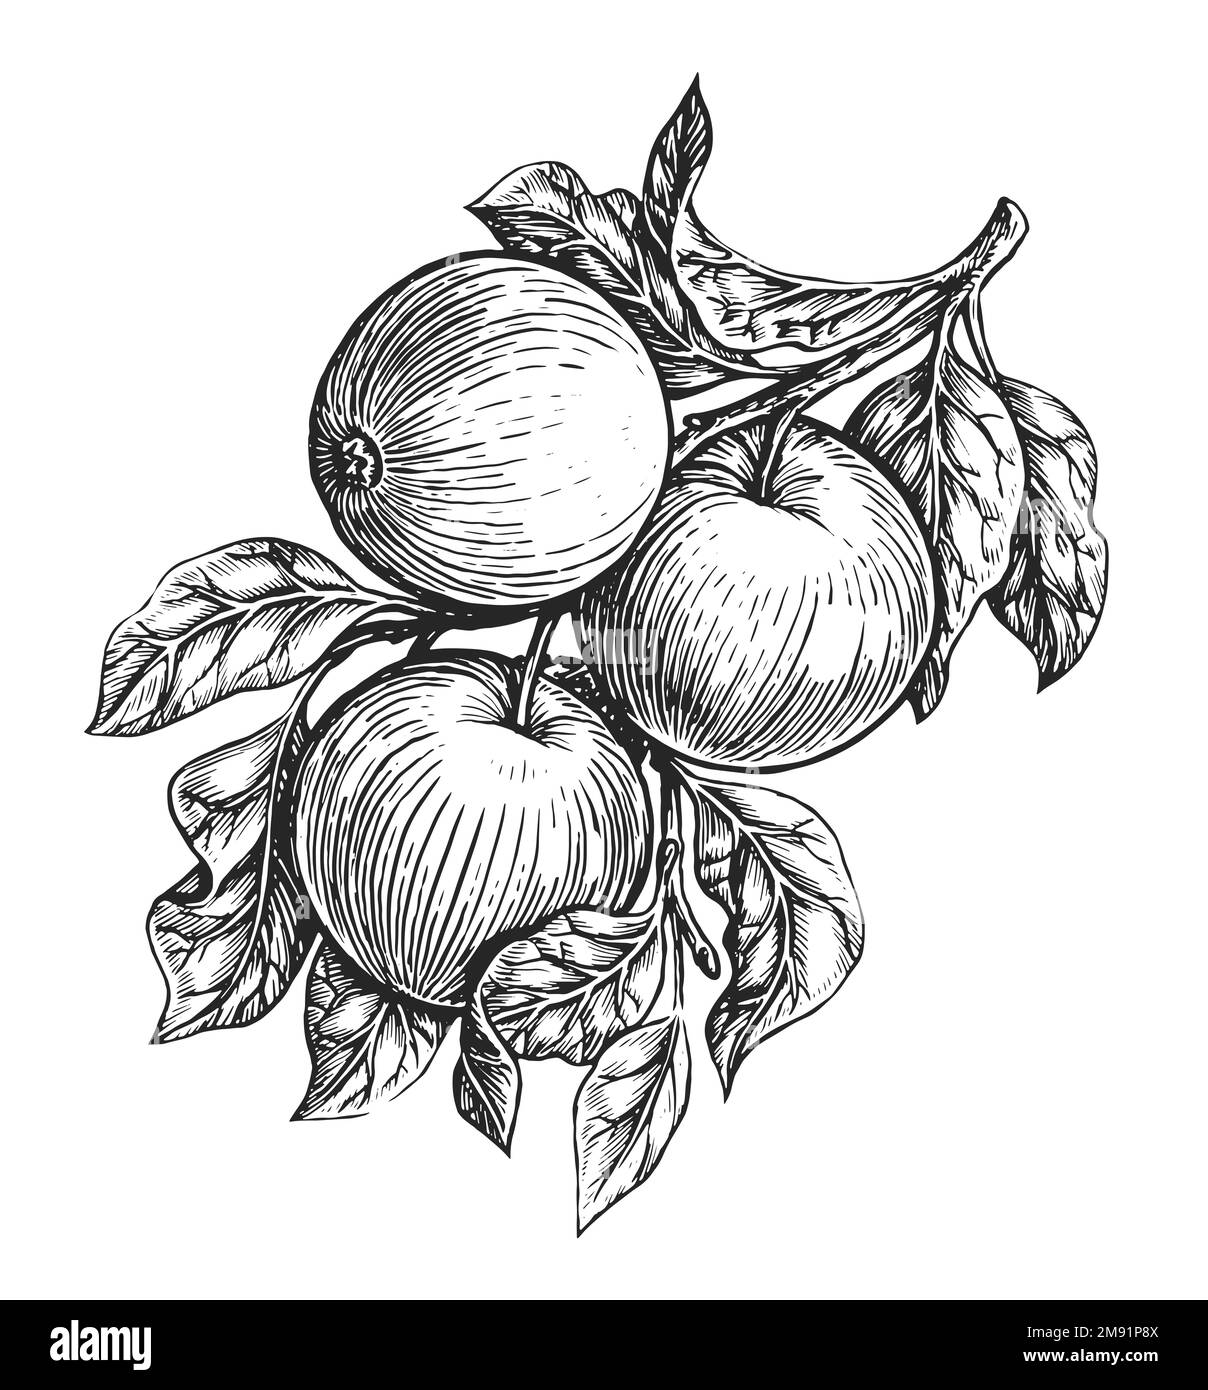 Ramo di mela disegnato a mano con mele mature e foglie isolate su sfondo bianco. Illustrazione di schizzo di frutta fresca Foto Stock